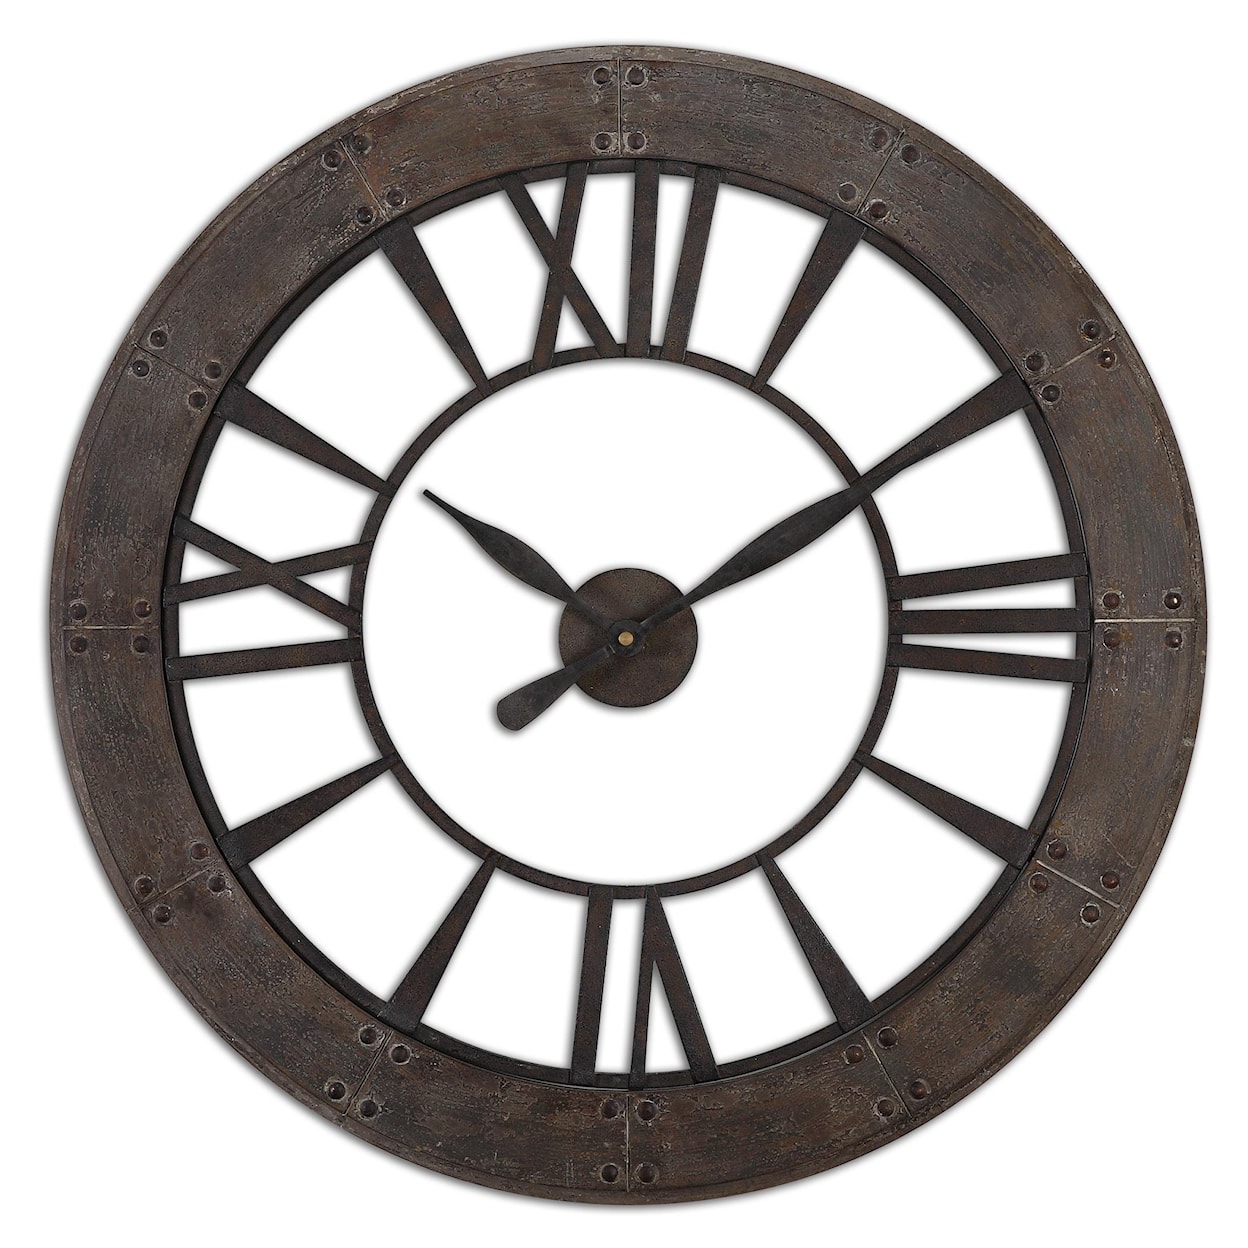 Uttermost Clocks Ronan Wall Clock